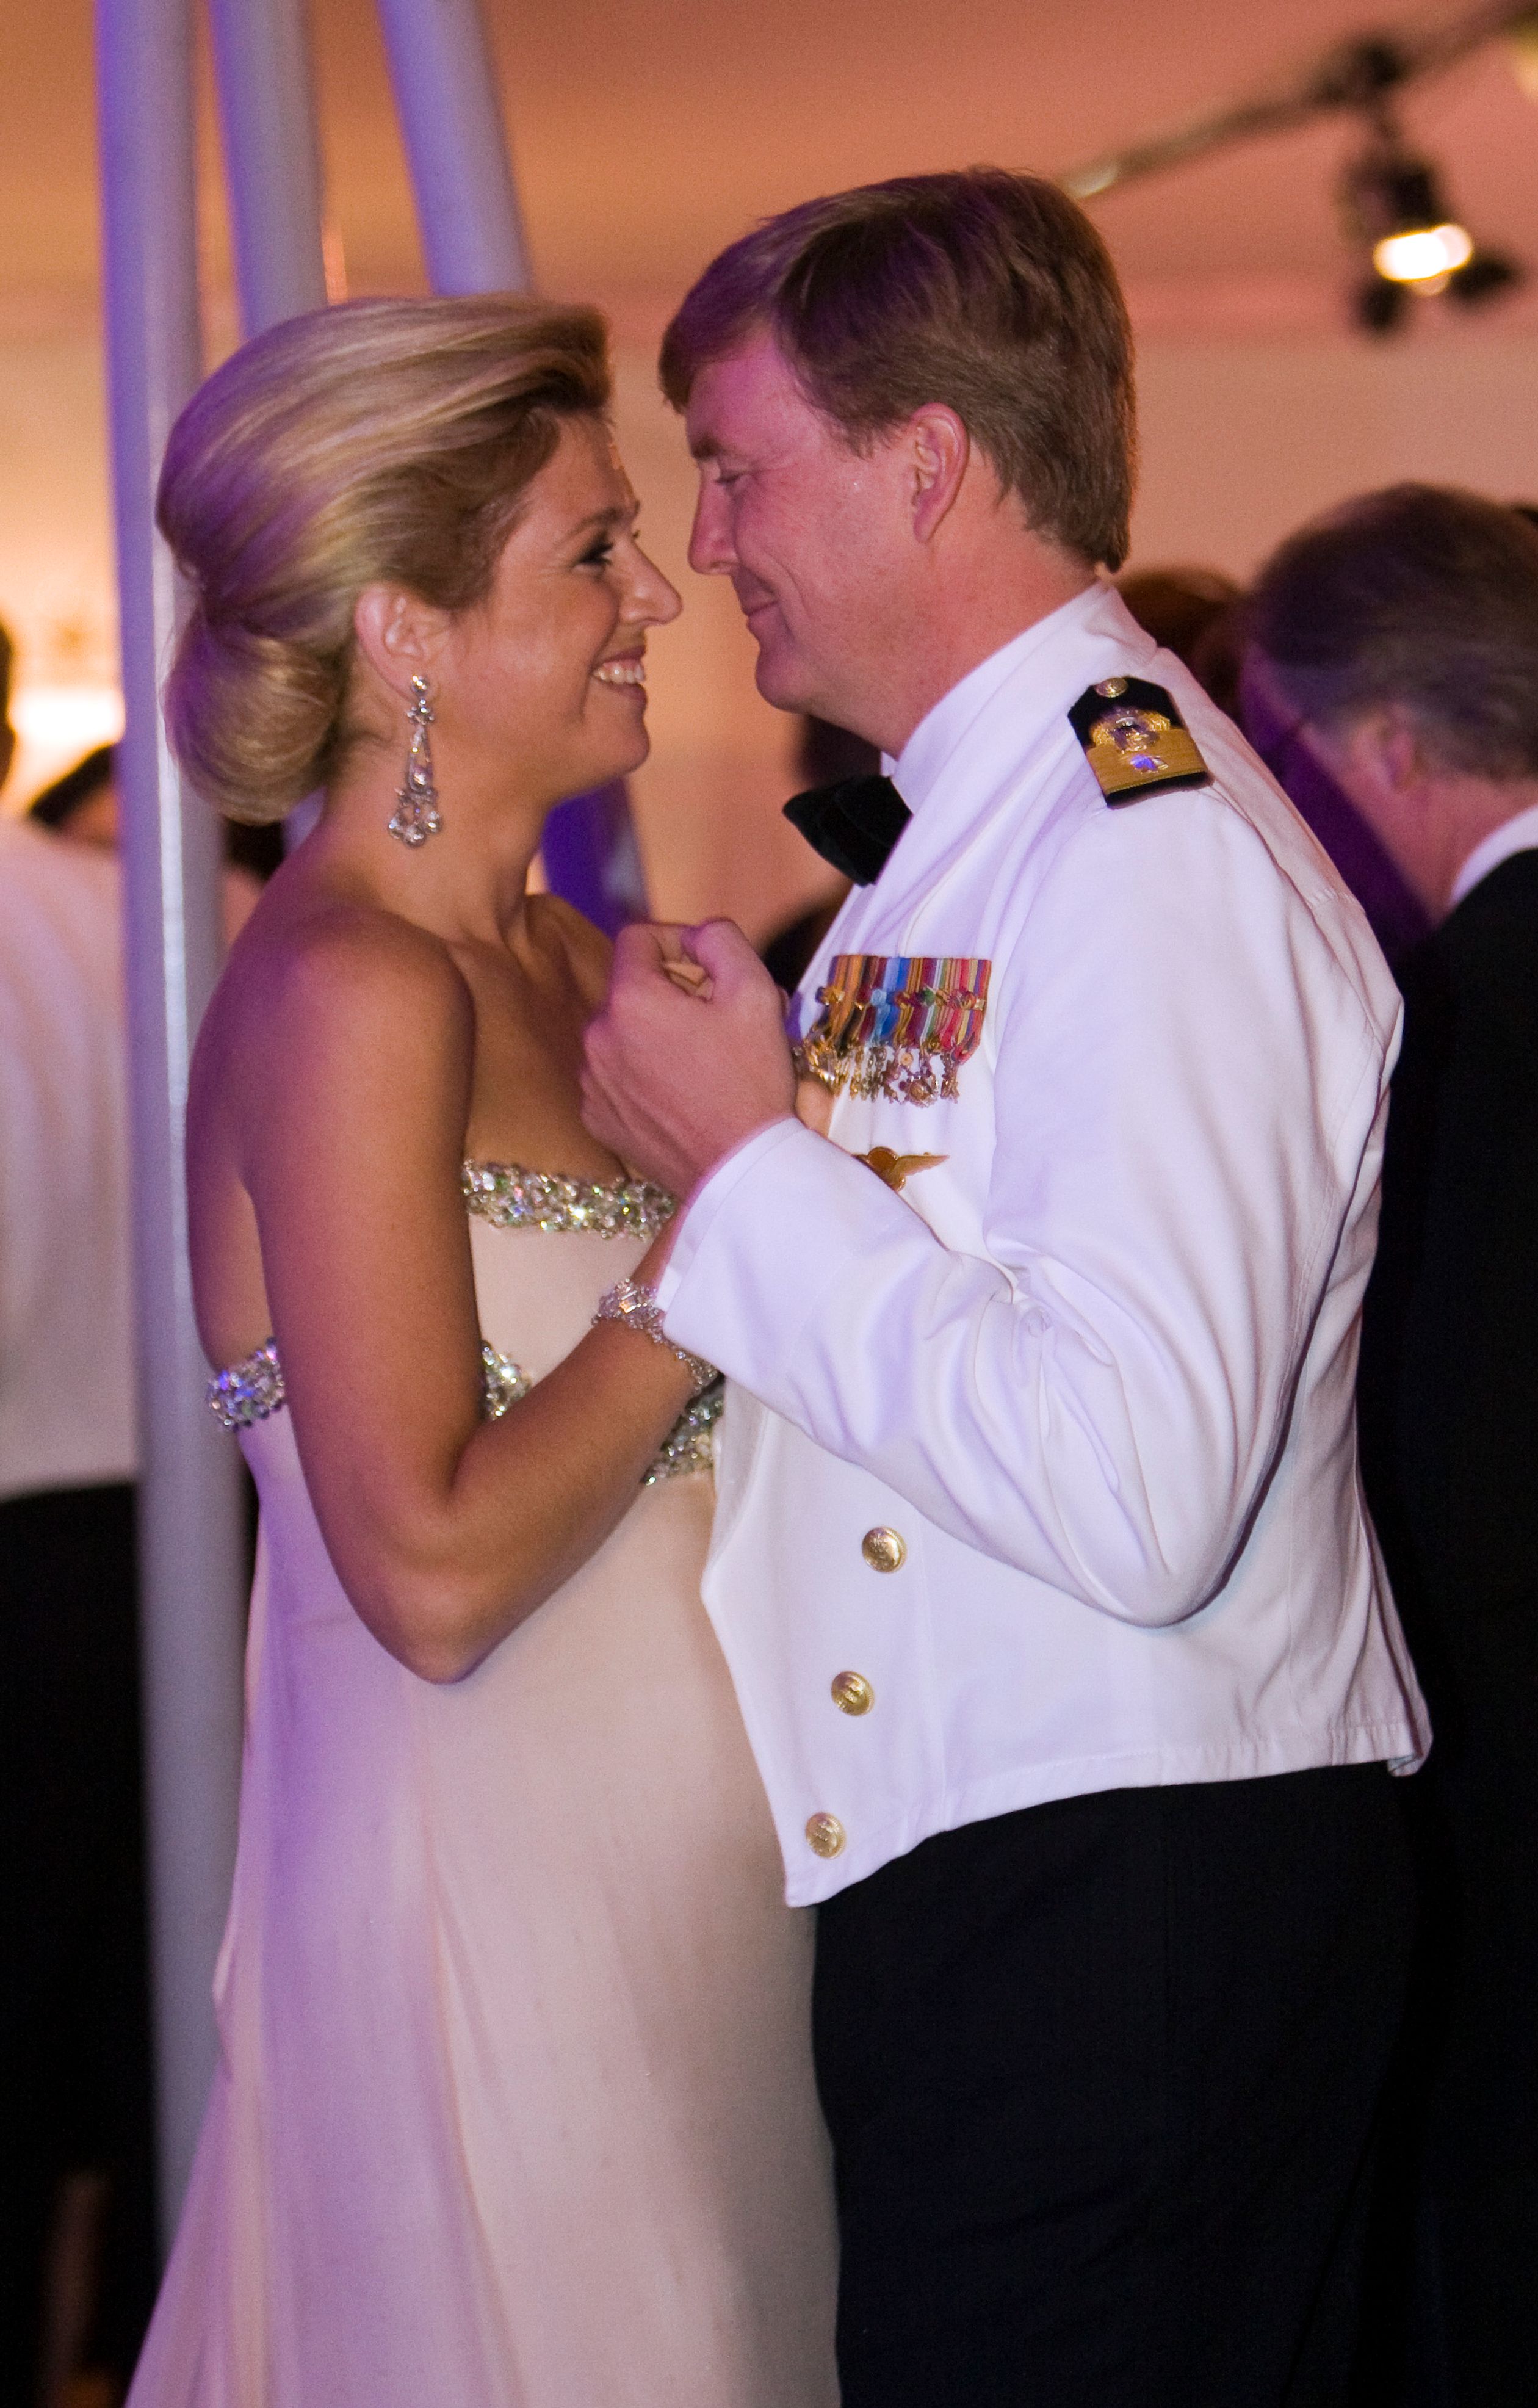 Prins Willem-Alexander en prinses Máxima openden de dansavond door als eerst de dansvloer te